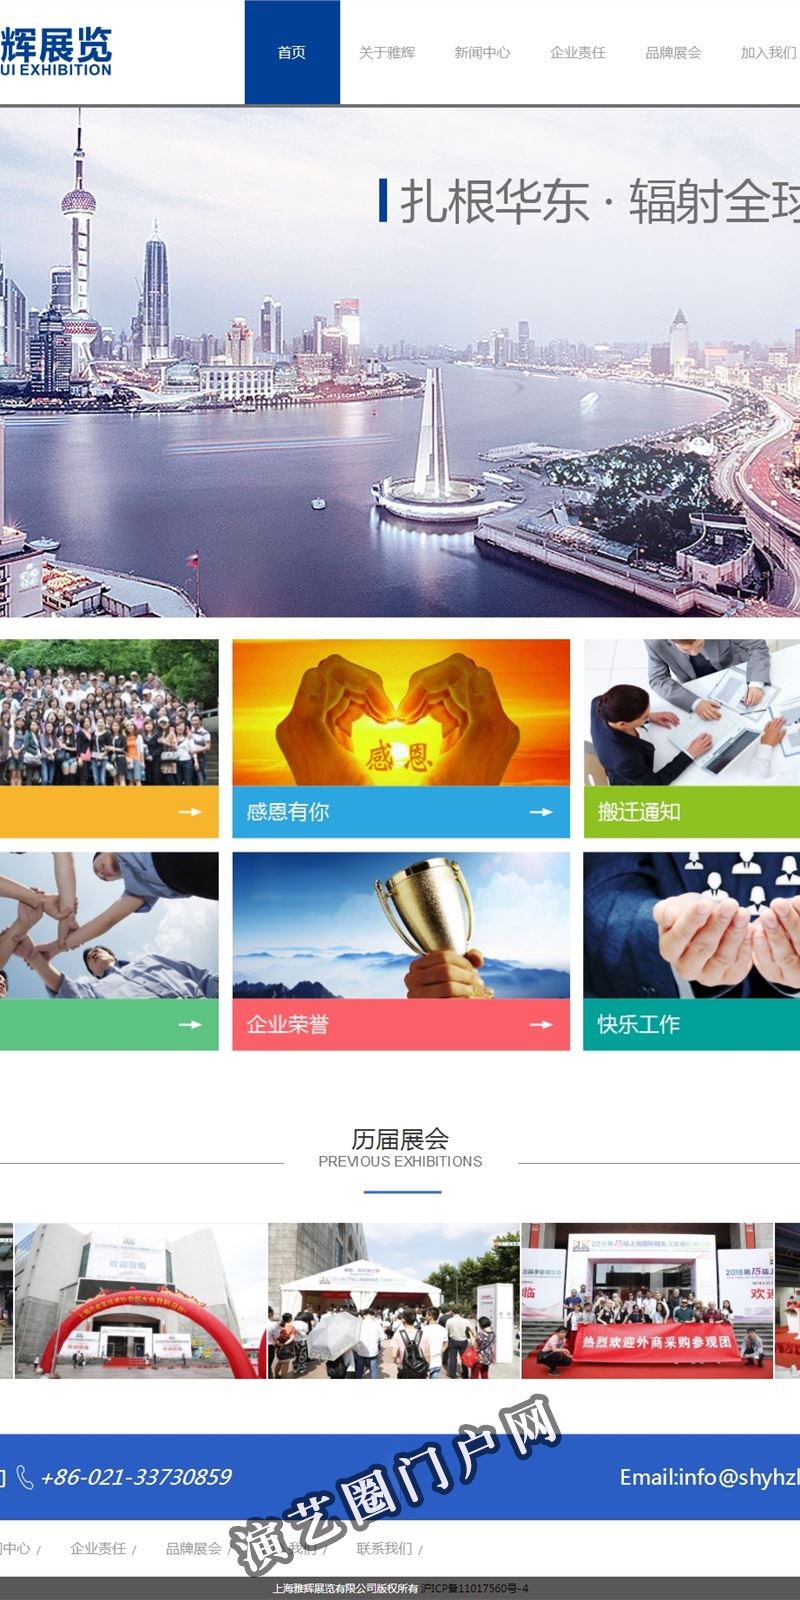 上海雅辉展览有限公司-专业组织、主承办国内外大型展览与会议的机构之一截图